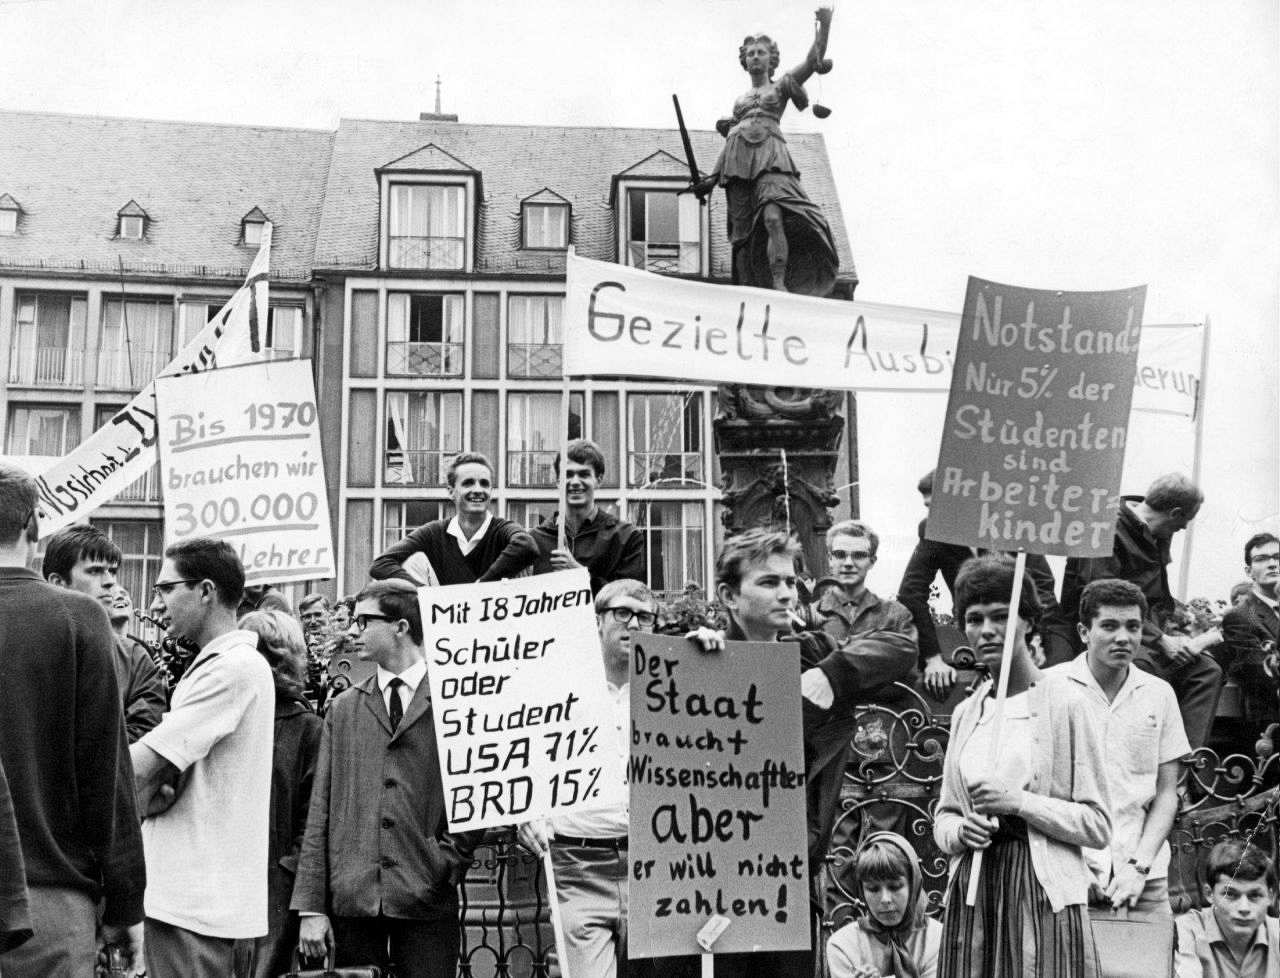 schwarz-weiß-Fotografie von demonstrierenden Studenten gegen Bildungsnotstand auf dem Frankfurter Rathausvorplatz